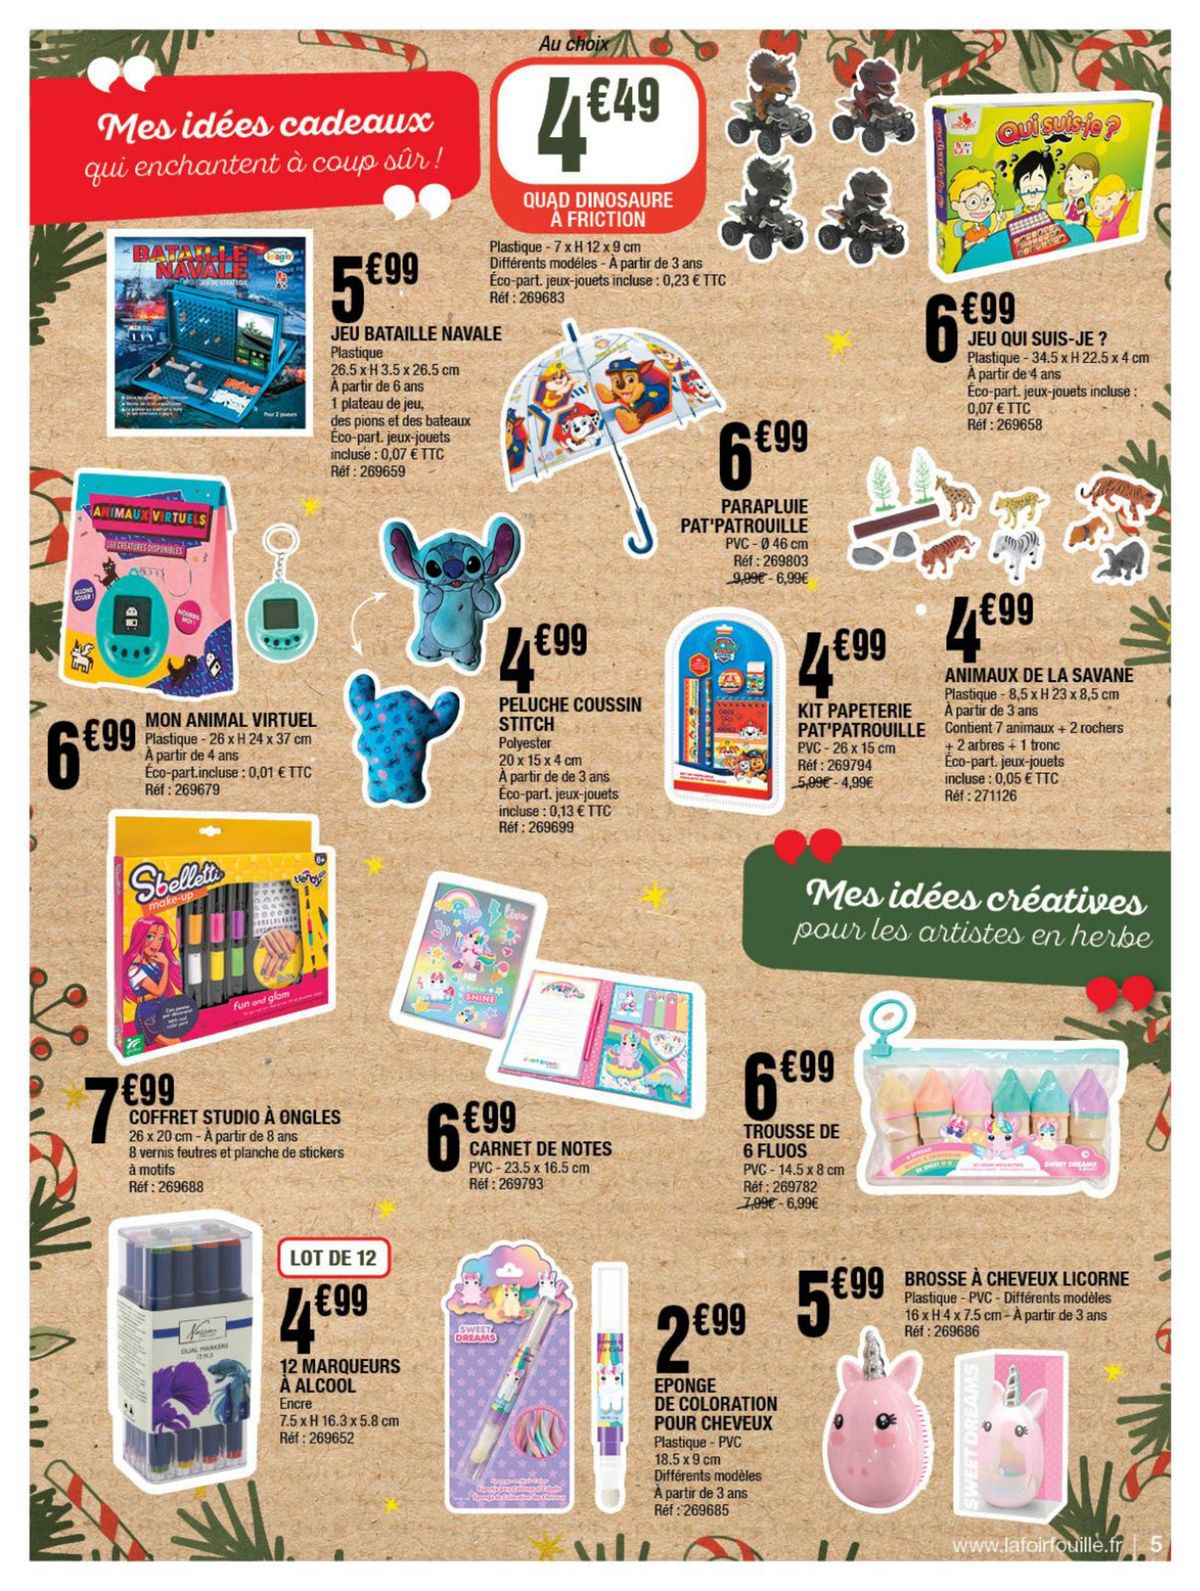 Catalogue Mes idées cadeaux pour briller à Noël, page 00005